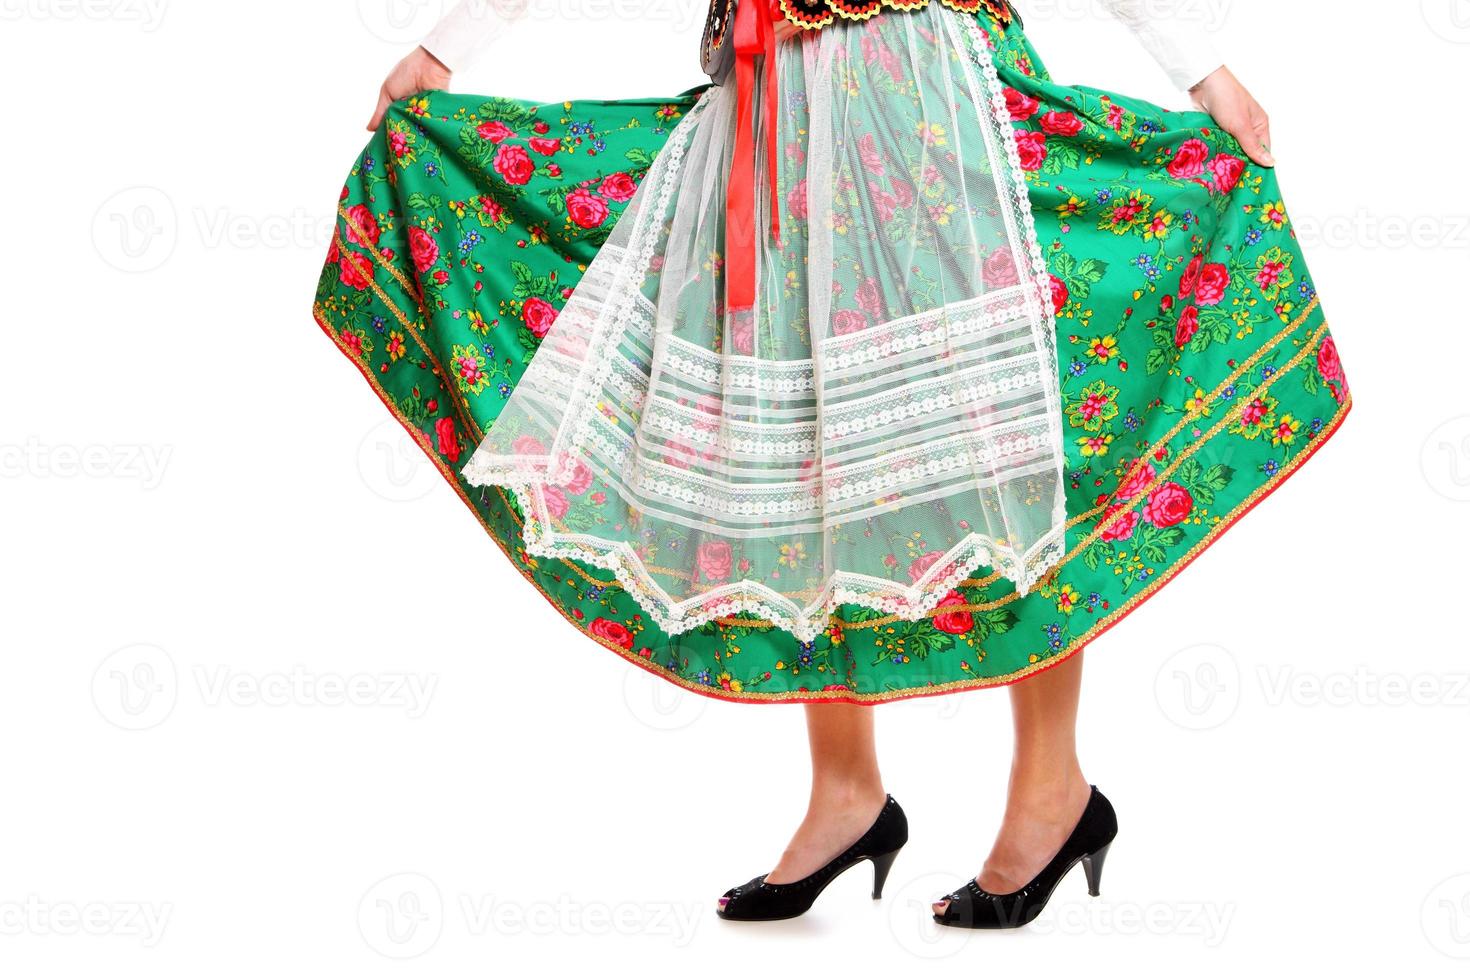 polnisches Mädchen in einem traditionellen Outfit foto